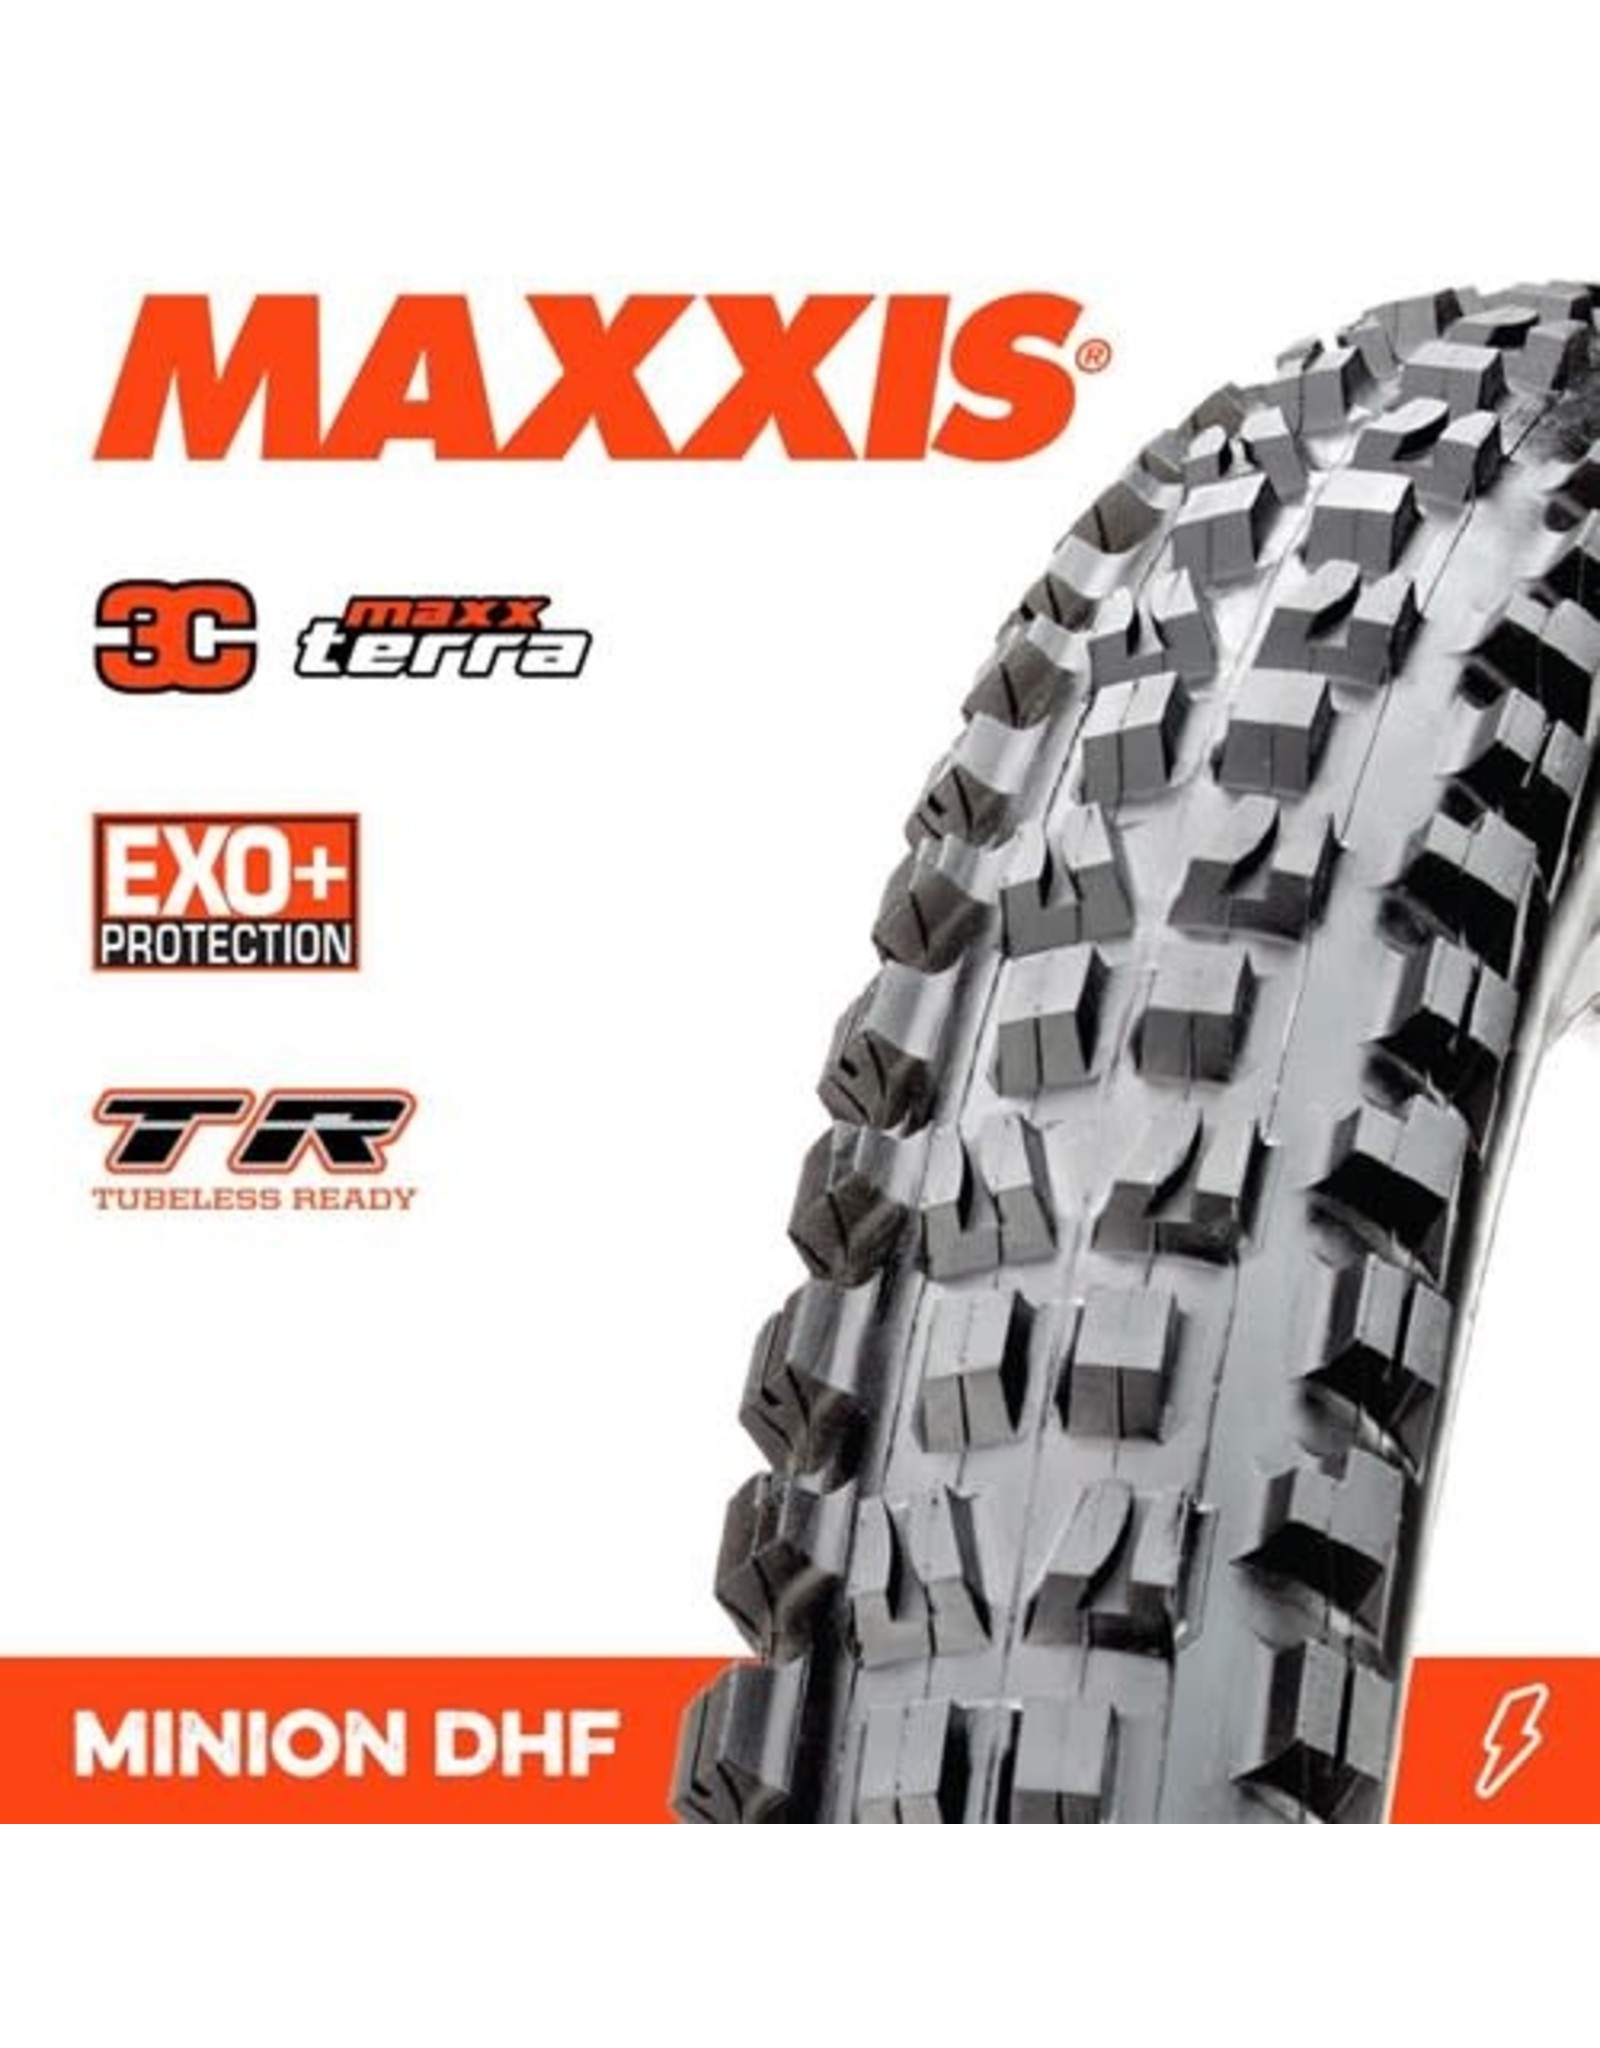 MAXXIS MAXXIS MINION DHF 29 X 2.60” TR EXO+ 3C MAXX TERRA FOLD 60TPI TYRE